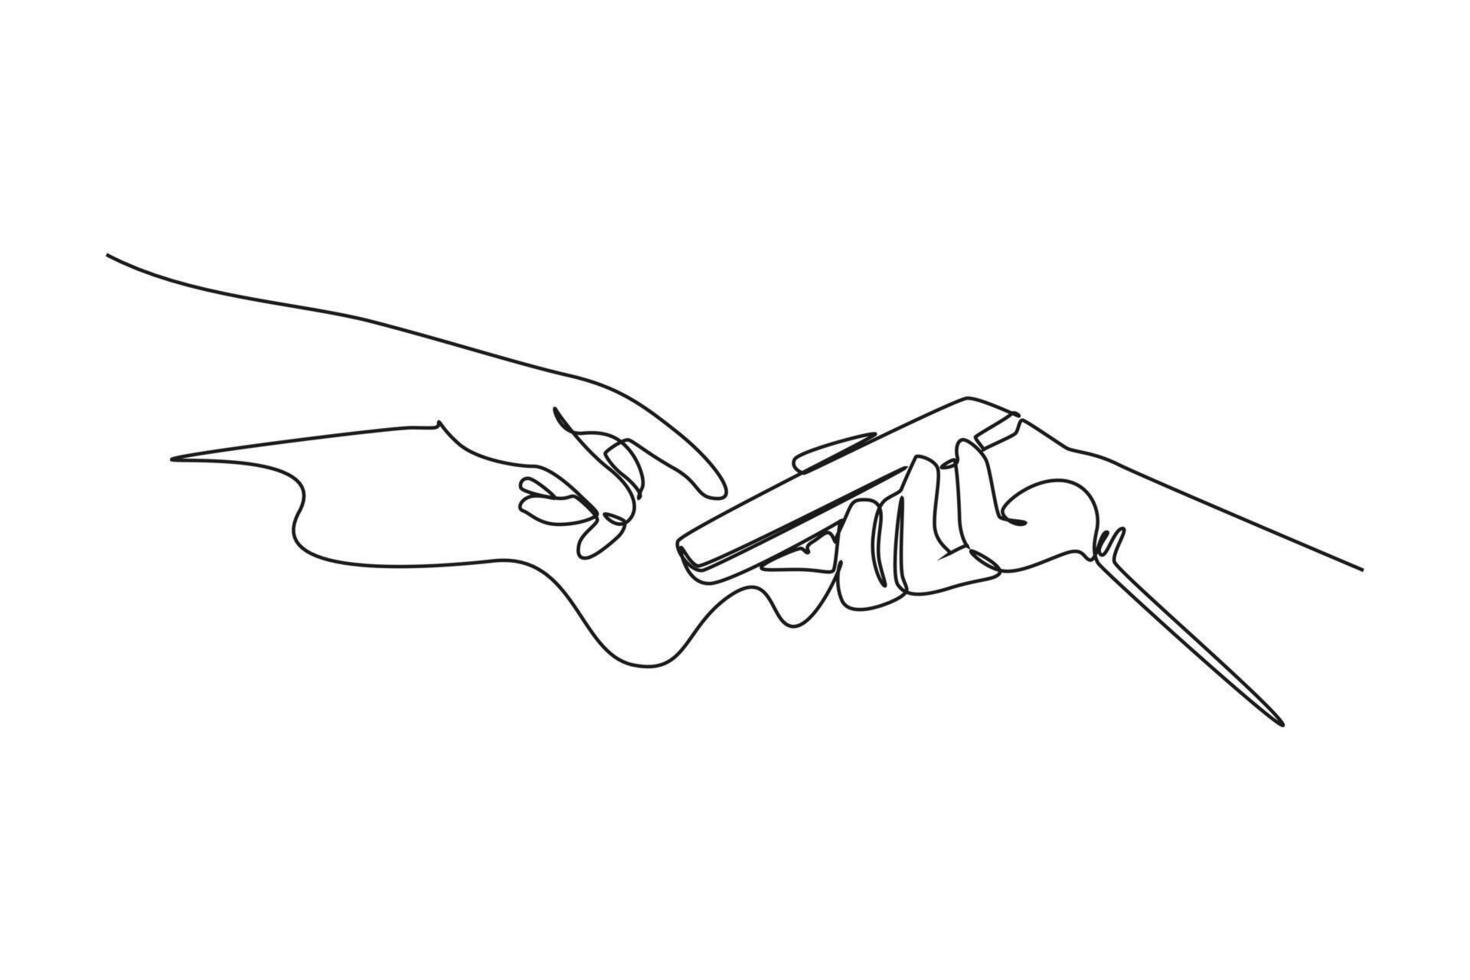 uno continuo linea disegno di dita toccante, toccando, scorrimento smartphone schermi concetto. scarabocchio illustrazione nel semplice lineare stile vettore